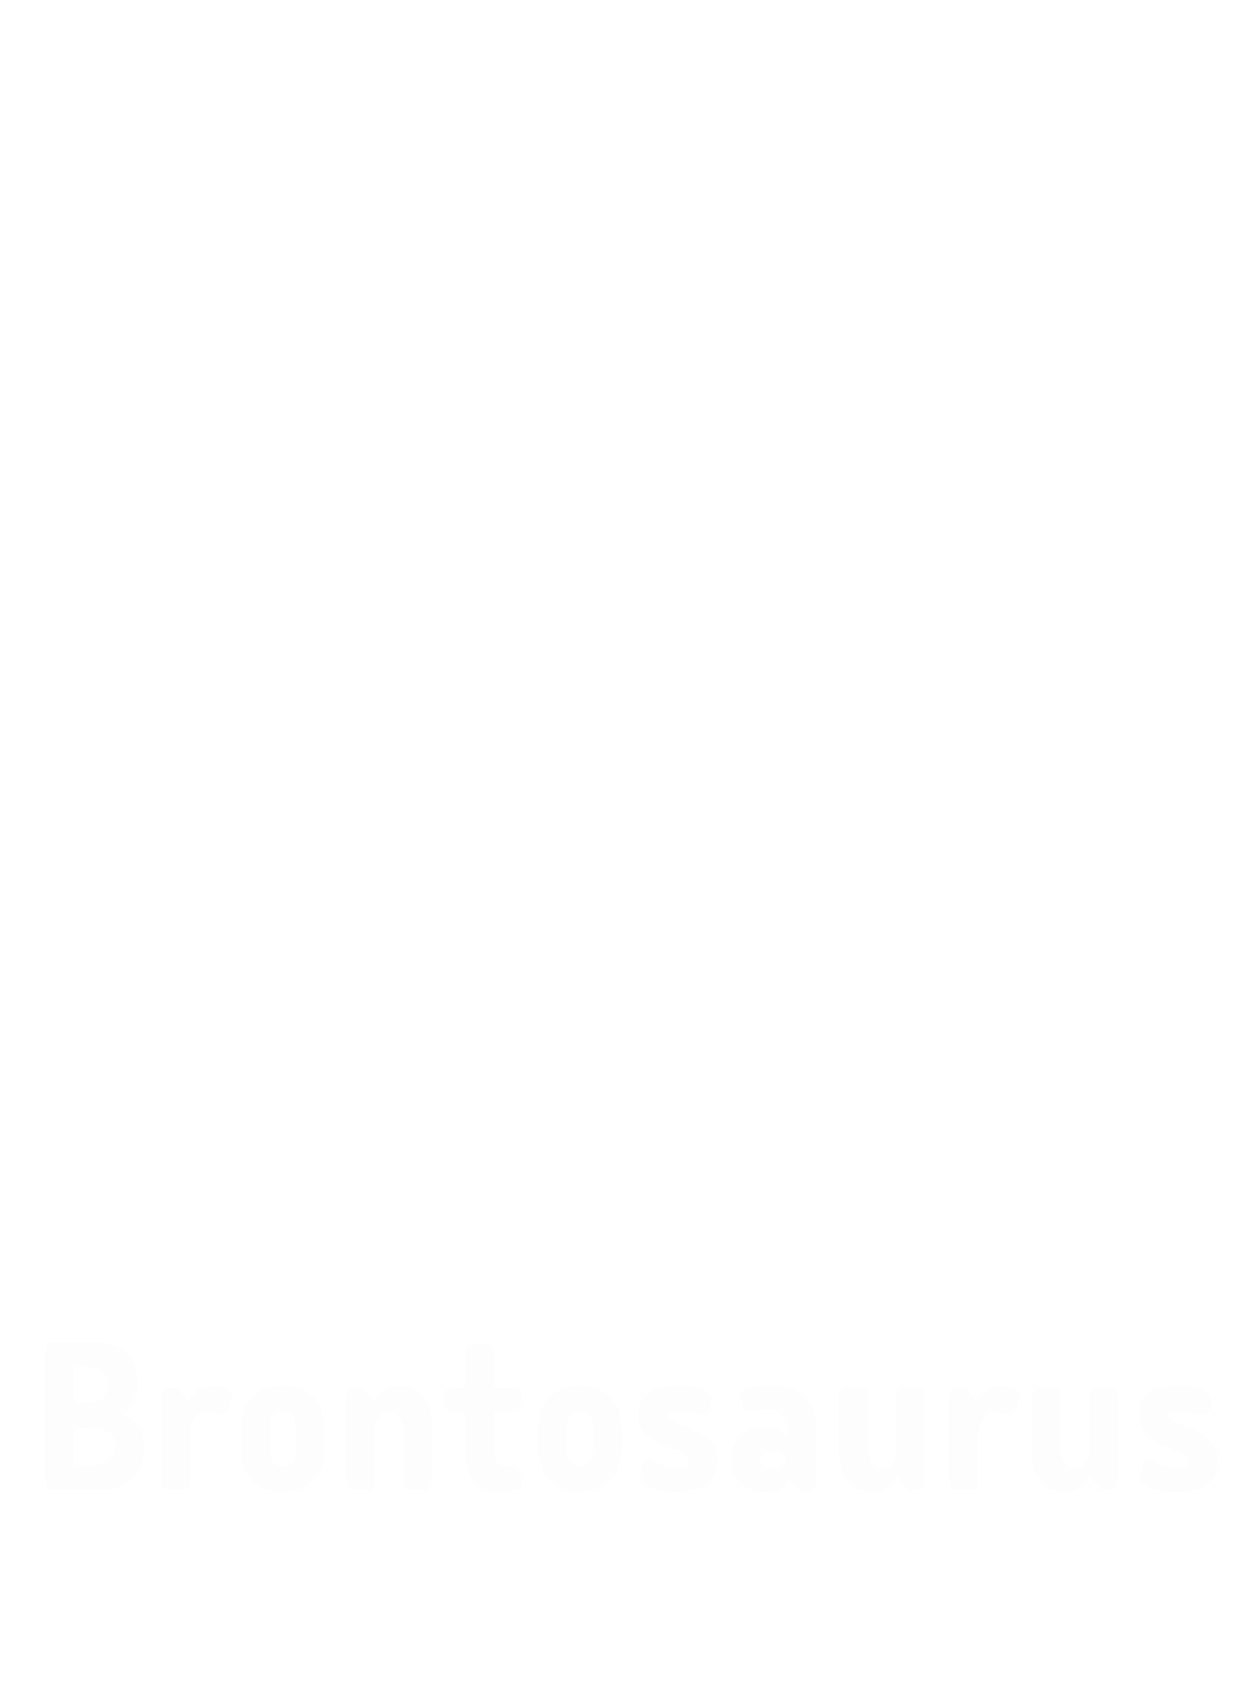 Akce Brontosaurus